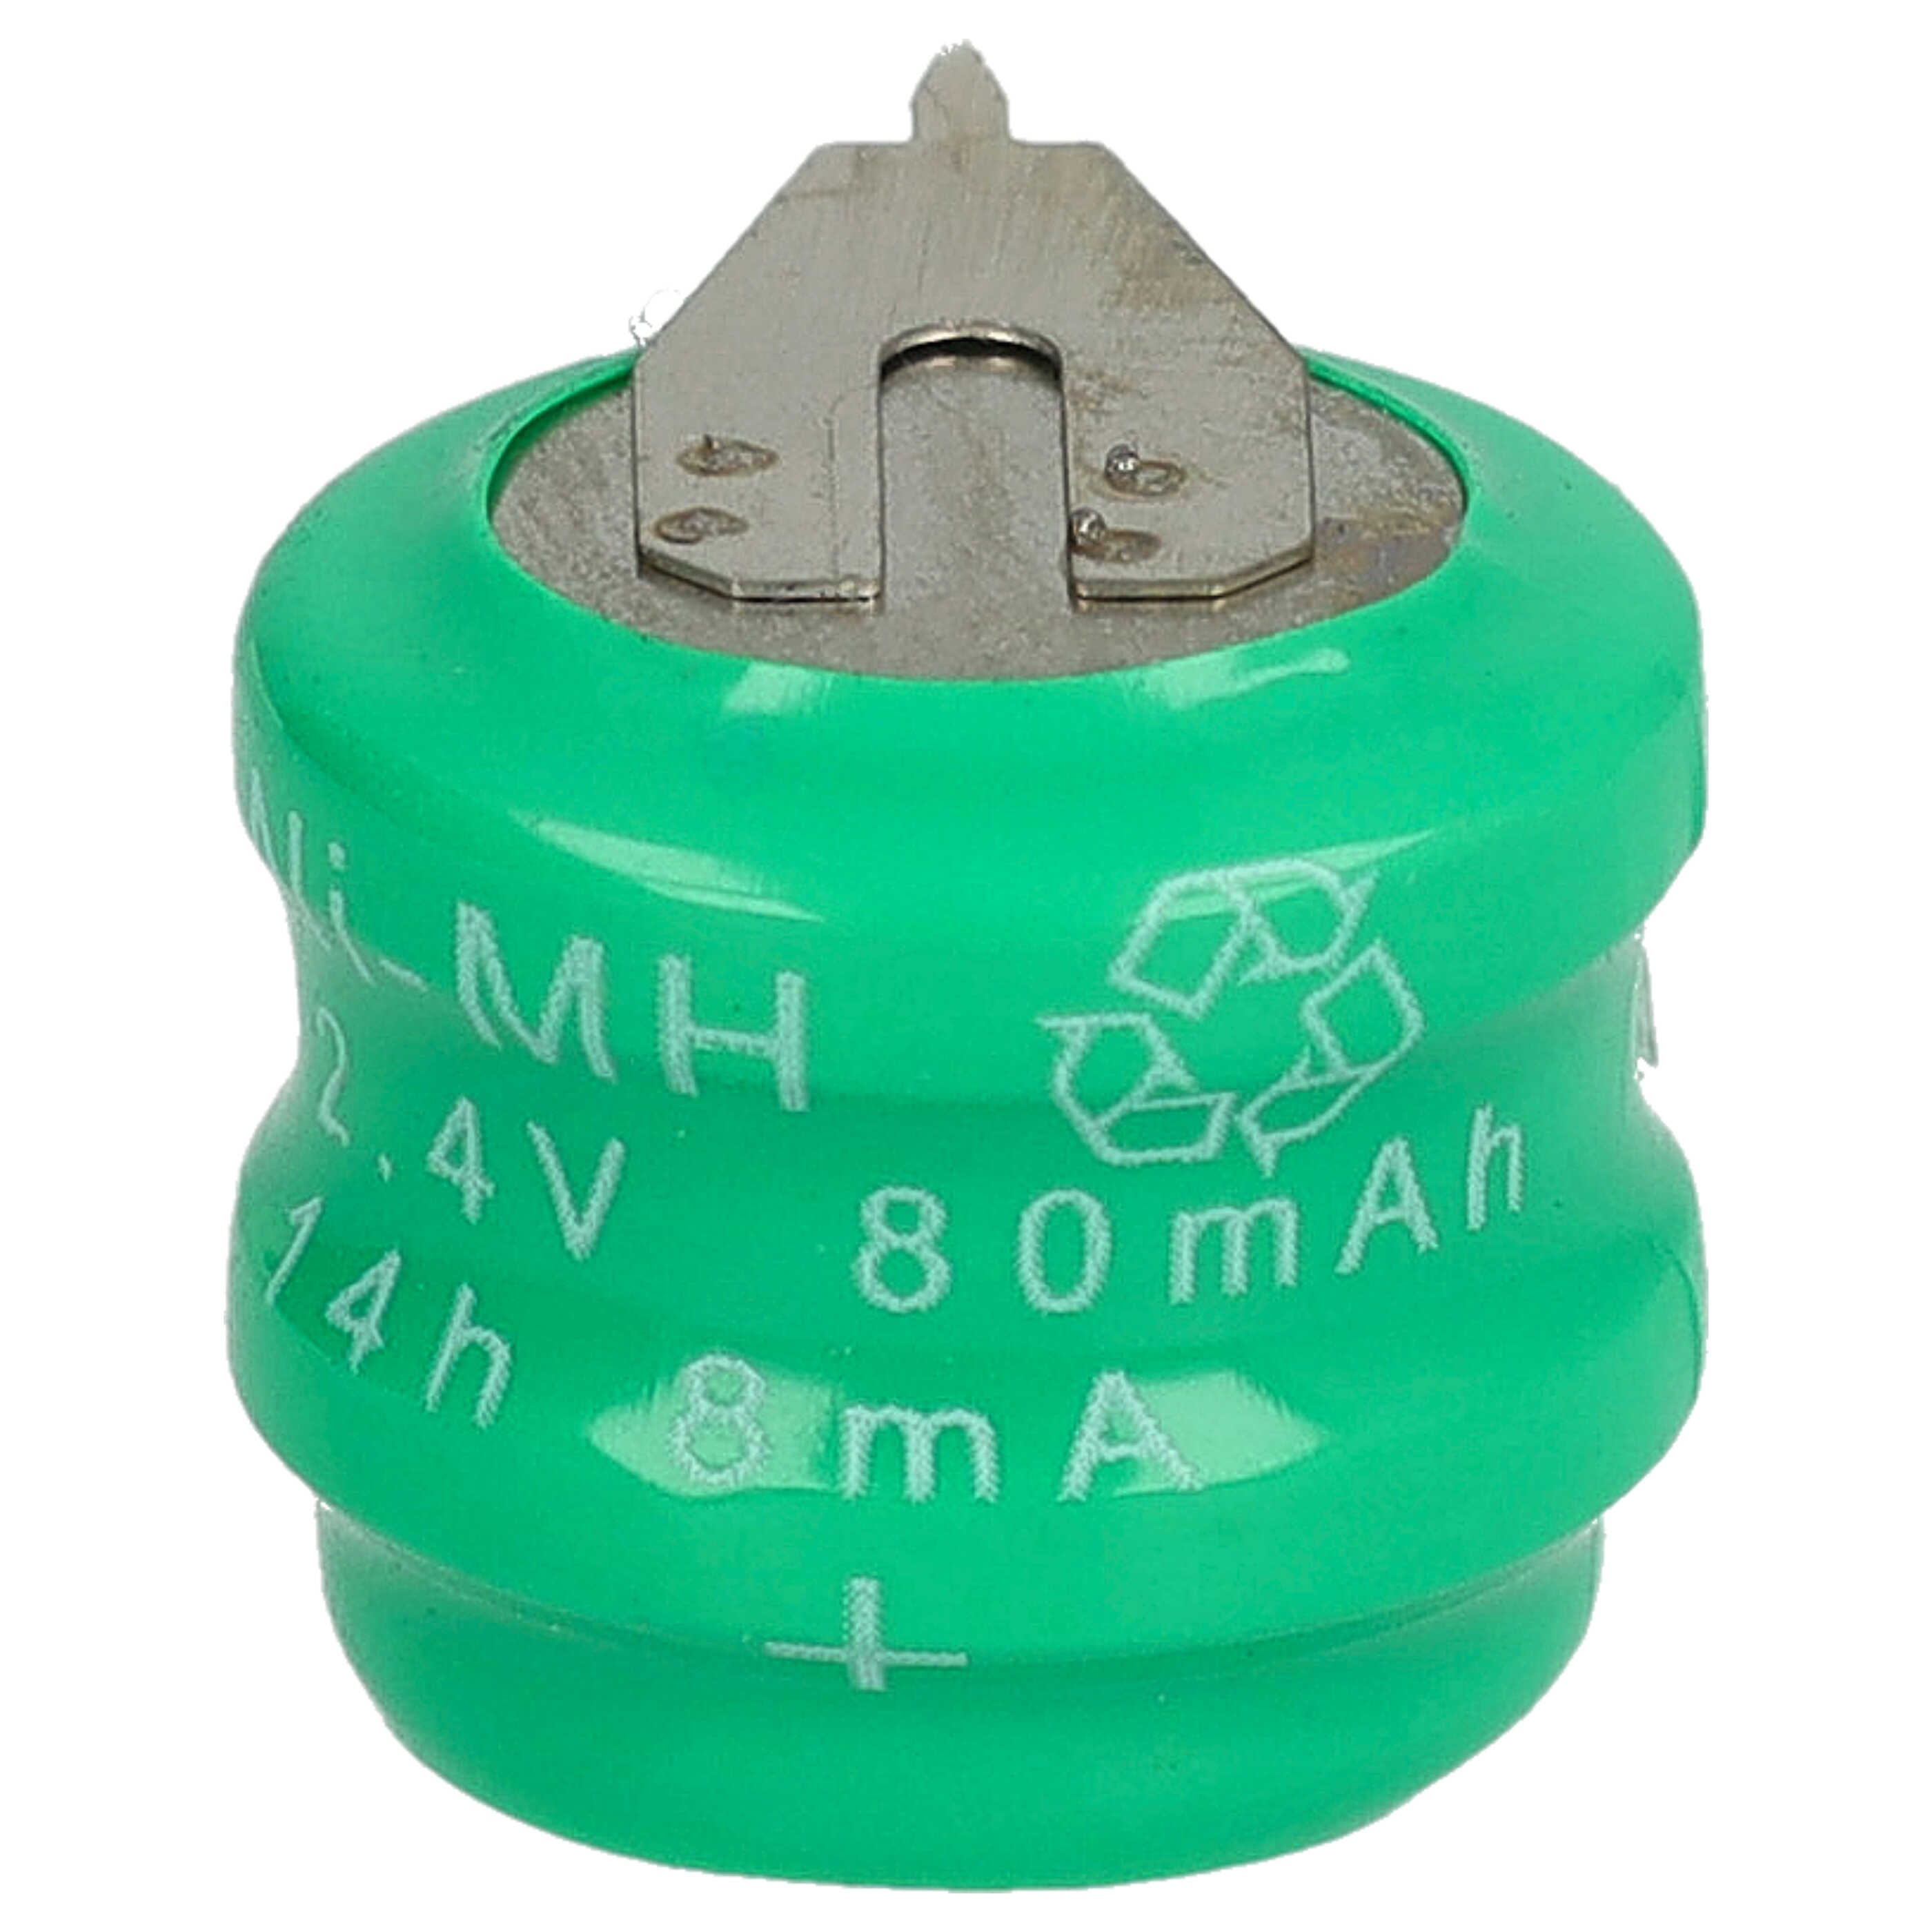 Batteria a bottone (2x cella) tipo V80H 2 pin sostituisce V80H per modellismo, luci solari ecc. 